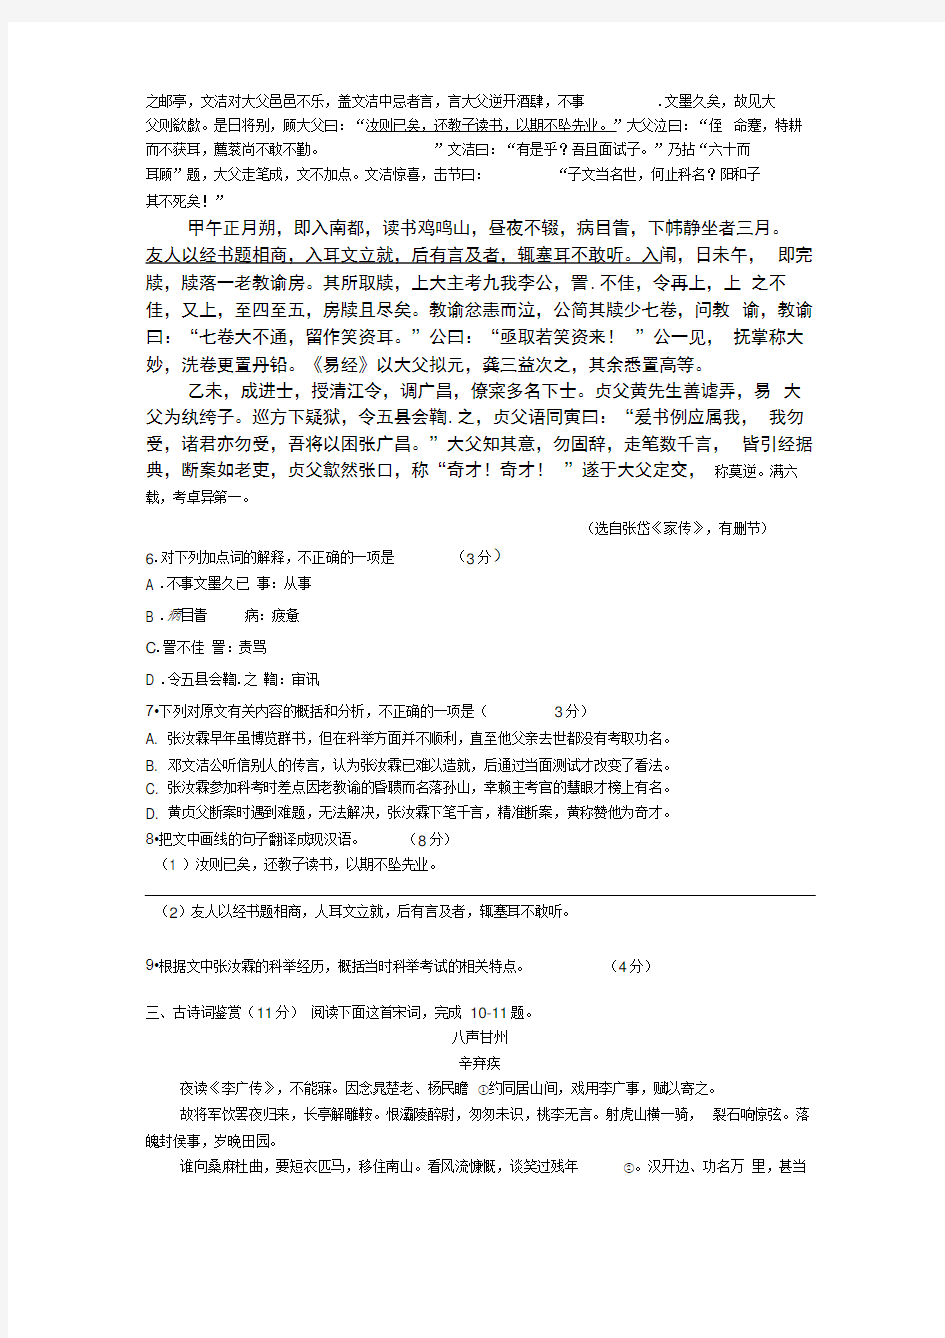 2016年江苏省高考语文试卷含答案